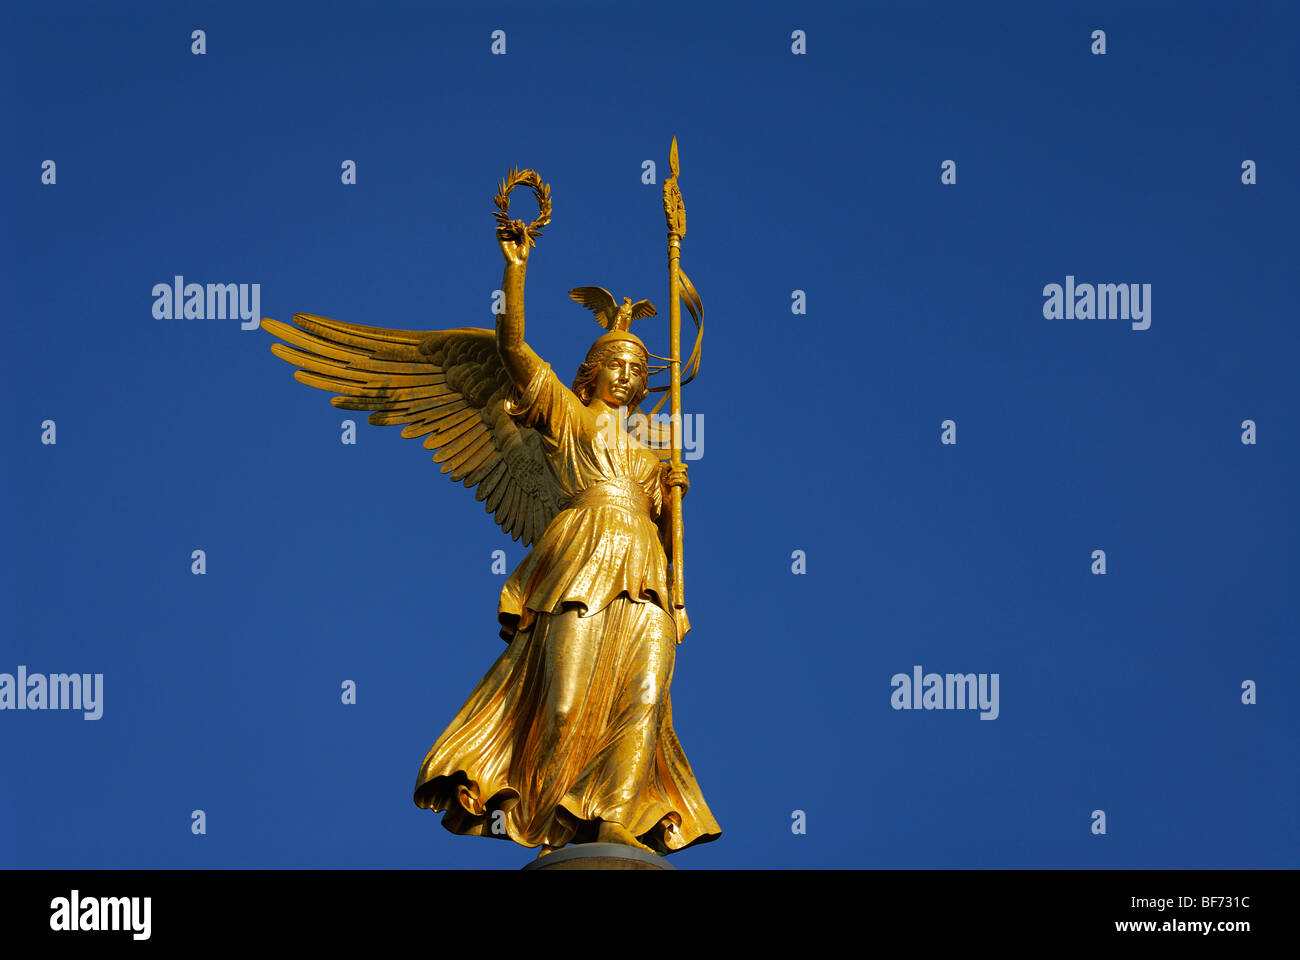 Berlin. Deutschland. Statue von Victoria Siegessäule Siegessäule. Stockfoto